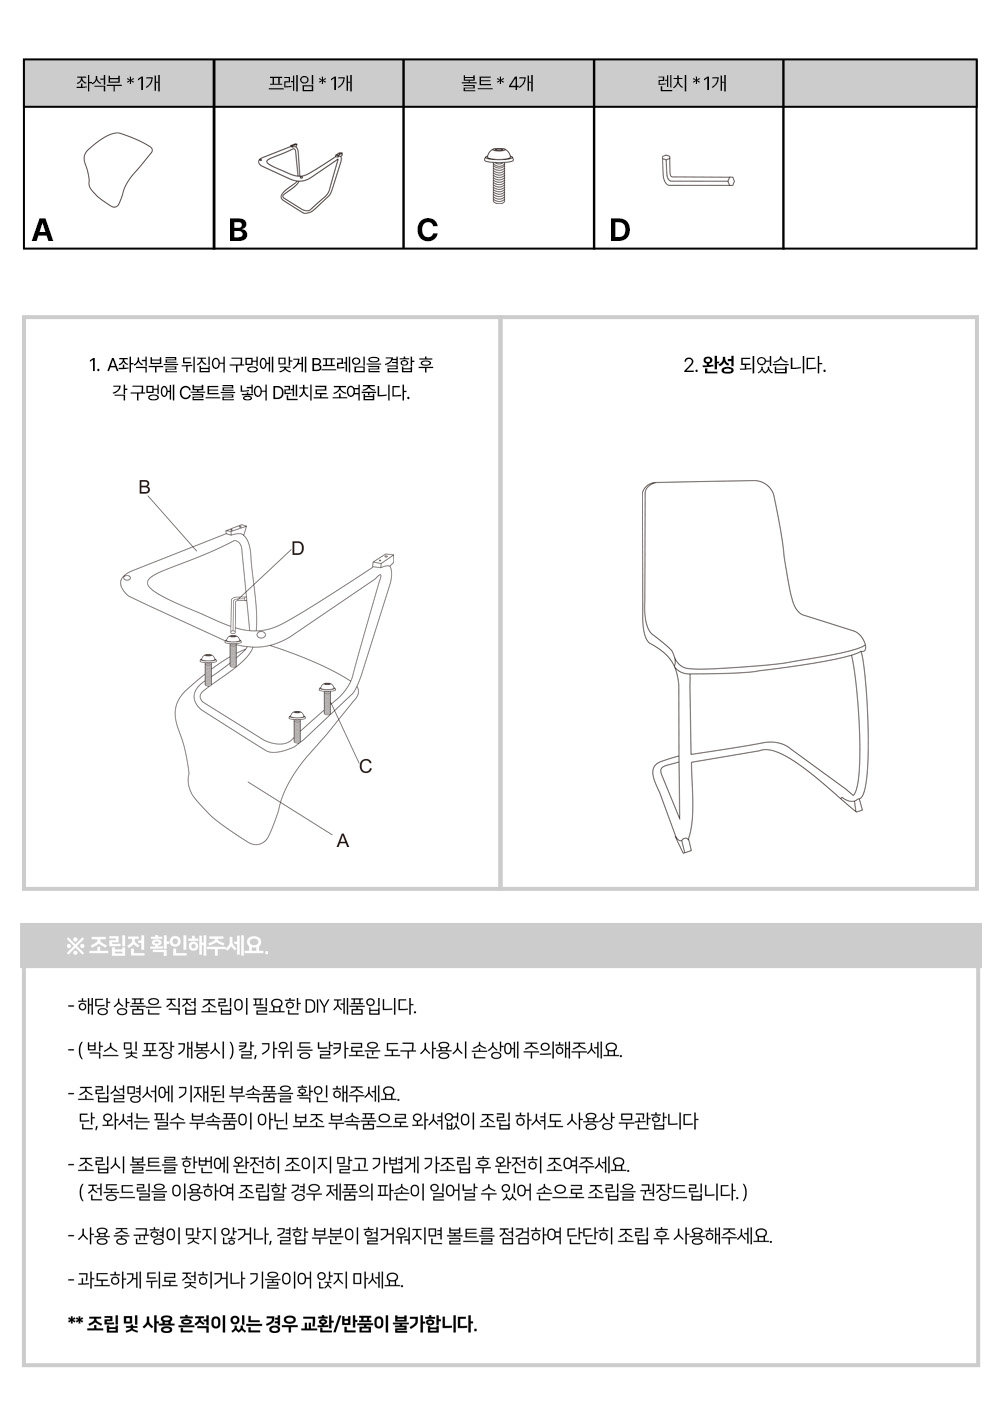 피카소가구 abs체어 아트웨이 / 키워드 : 디자인의자, 인테리어의자, 철재의자, 디자인의자, 카페의자, 미드센추리모던, 실버프레임, 카페의자, 디자인의자